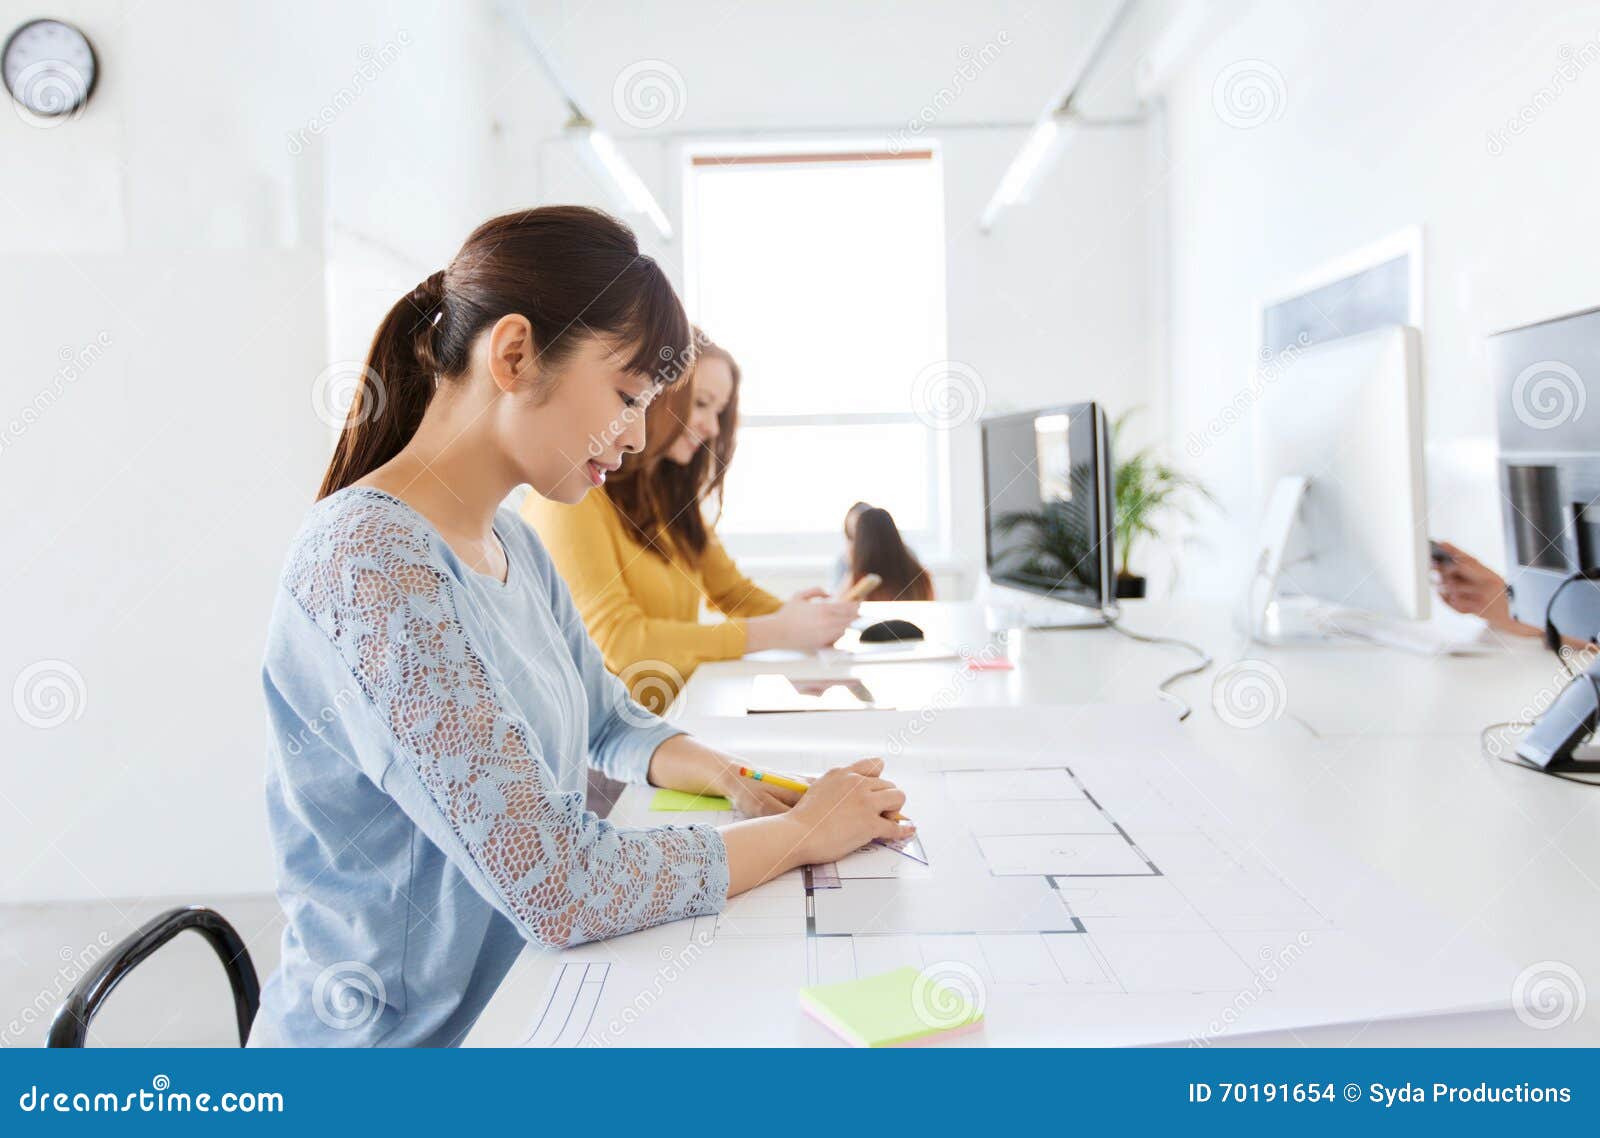 Arkitektkvinnateckning på ritning på kontoret. Affärs-, start- och folkbegrepp - asiatisk arkitekt eller idérik kvinnlig kontorsarbetare med linjal- och blyertspennateckningen på ritning